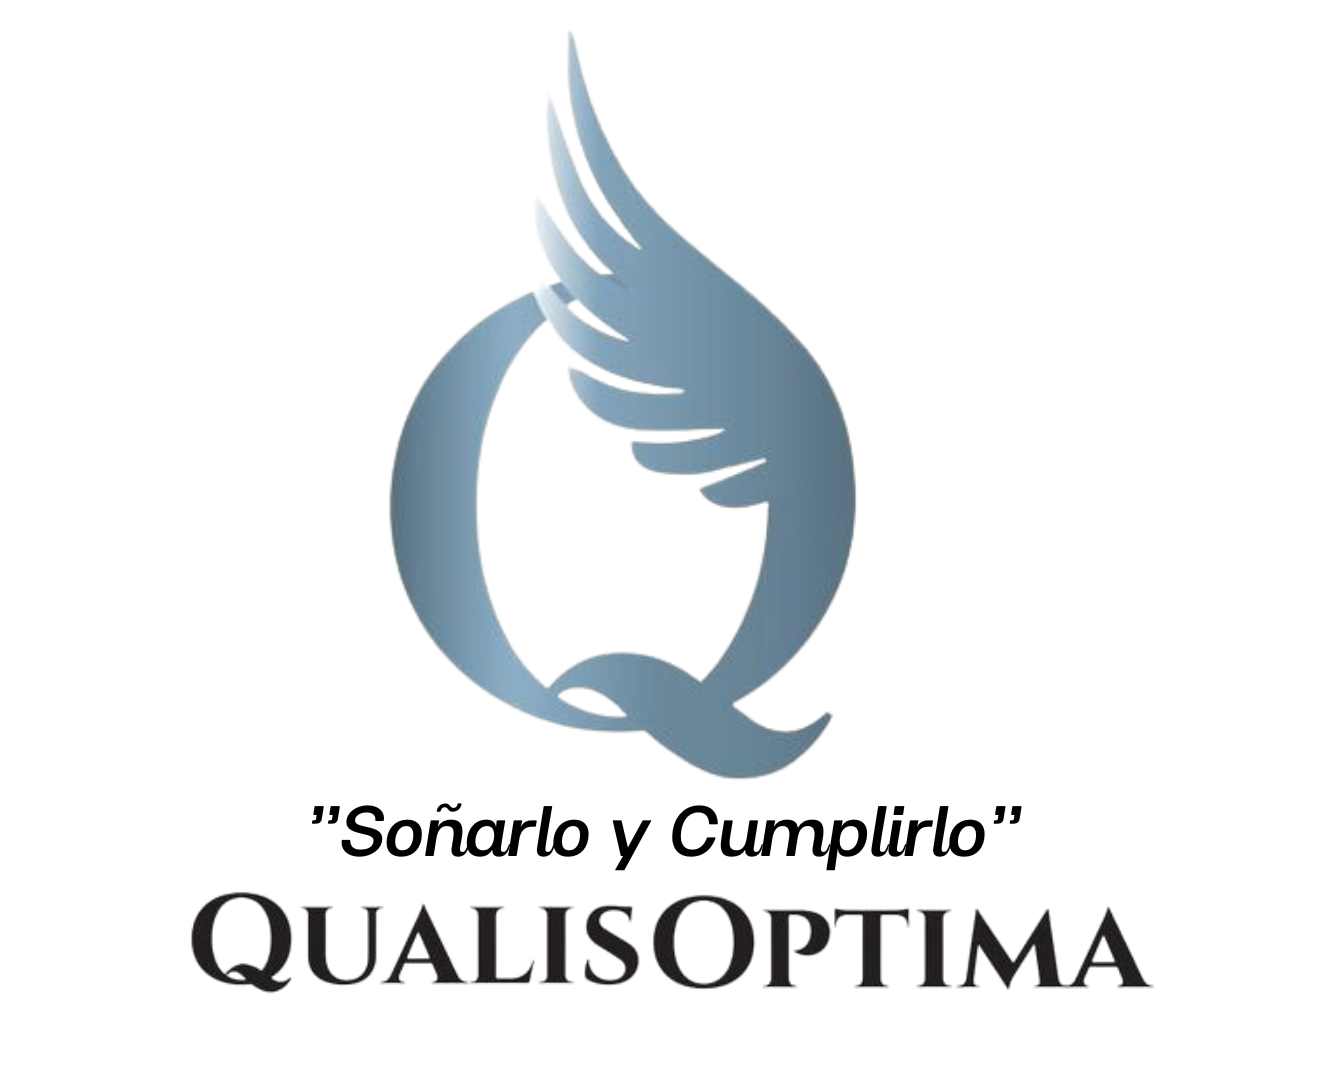 (c) Qualisoptima.com